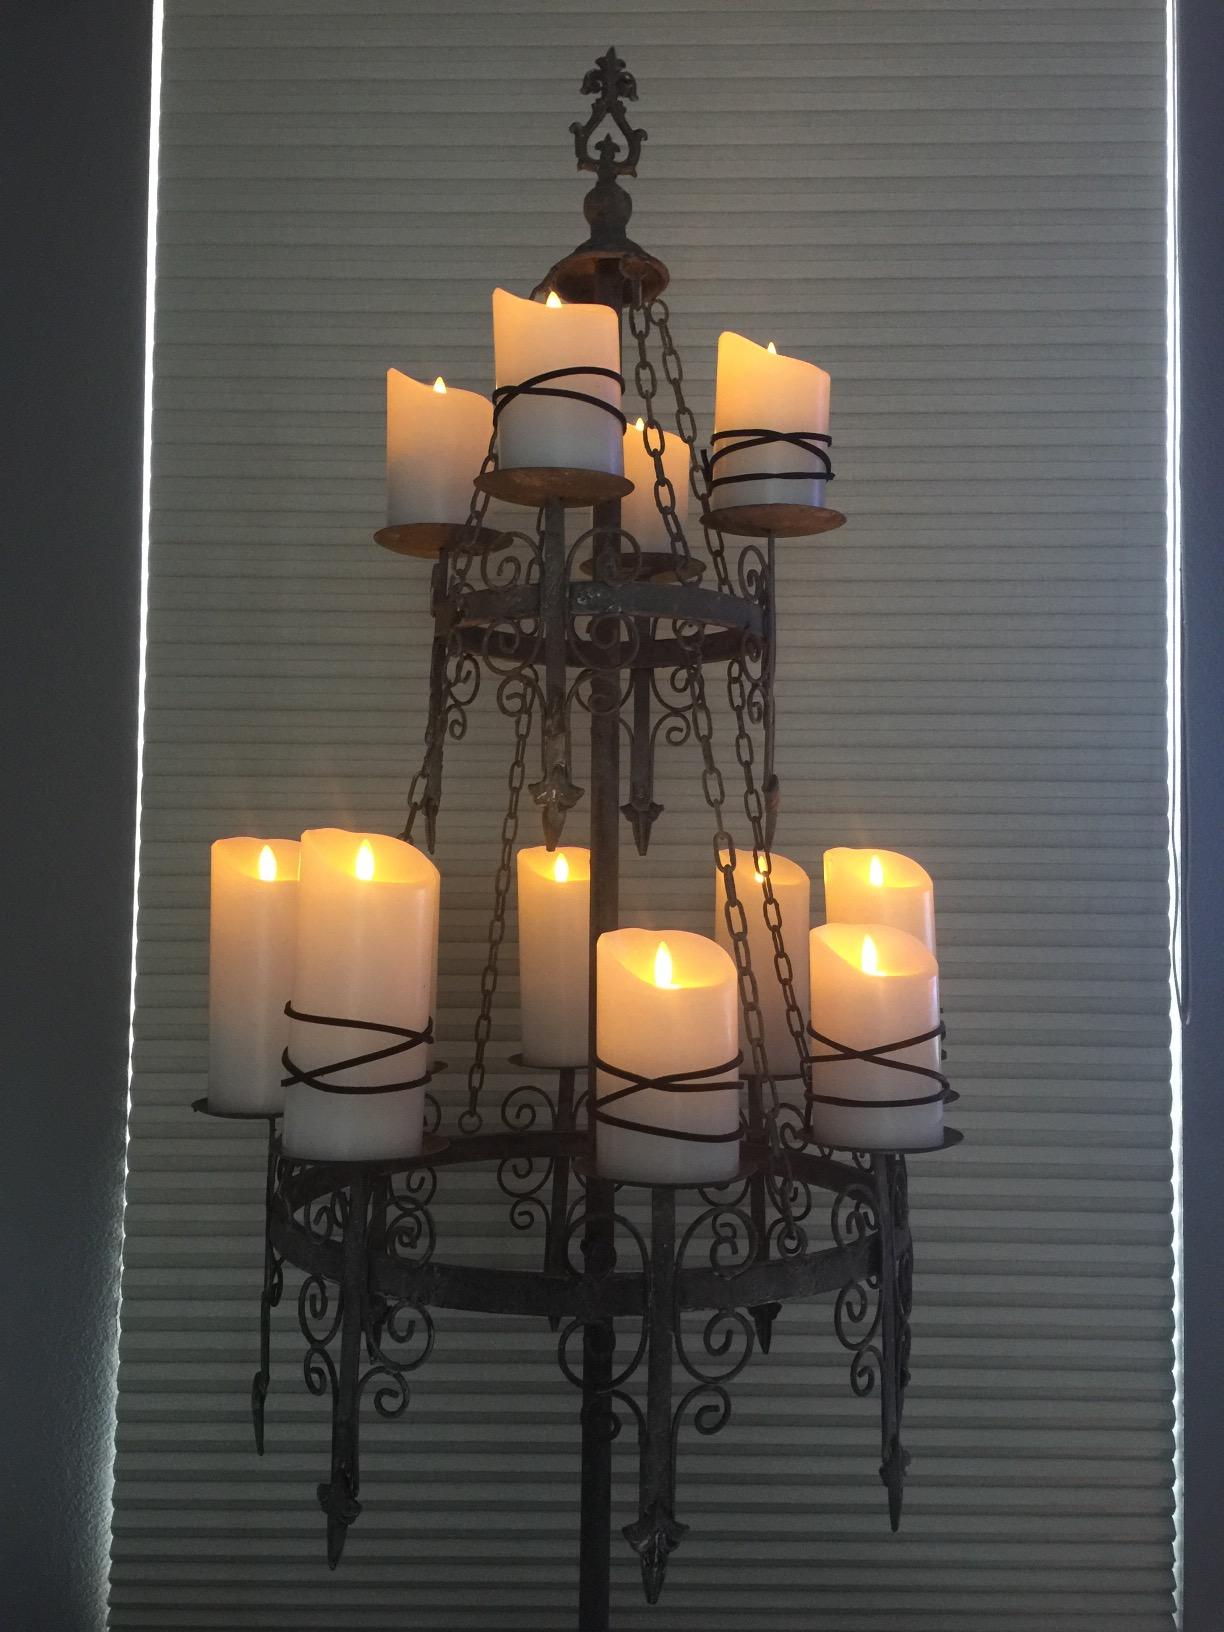 black candelabra metal chandelier warm LEDcandles closeup window blinds medieval candle holder